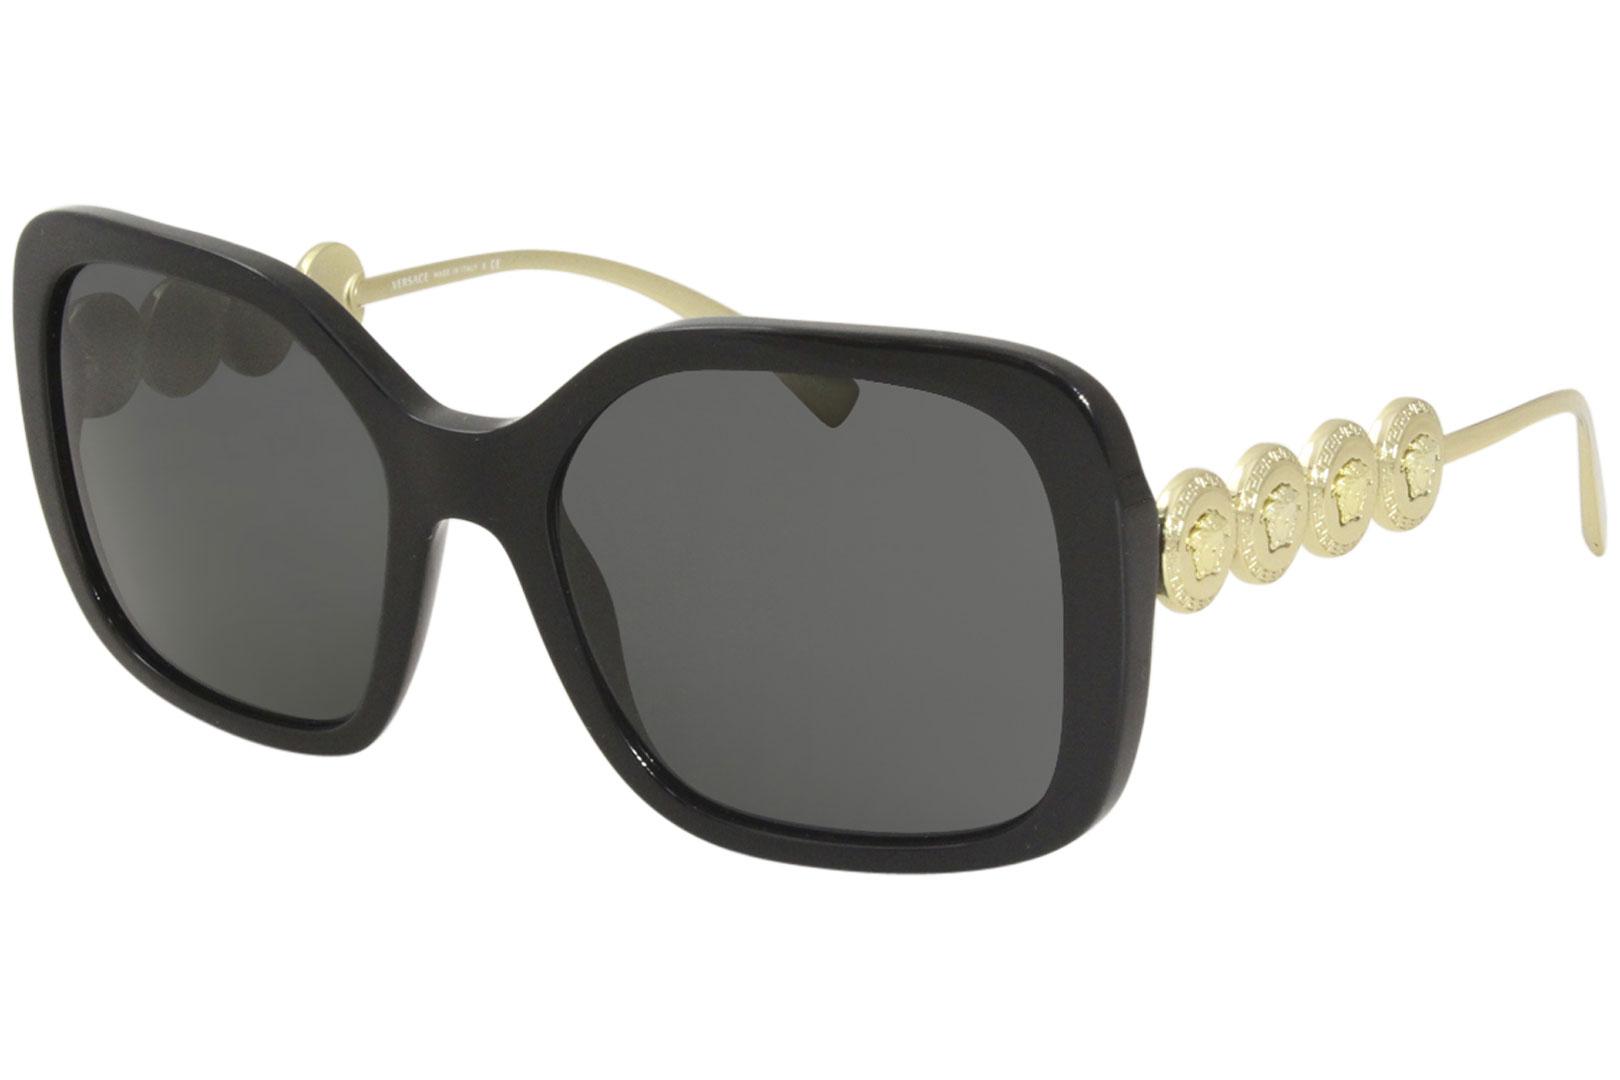 Versace VE2232 Sunglasses Women's Fashion Pilot w/Neck Strap